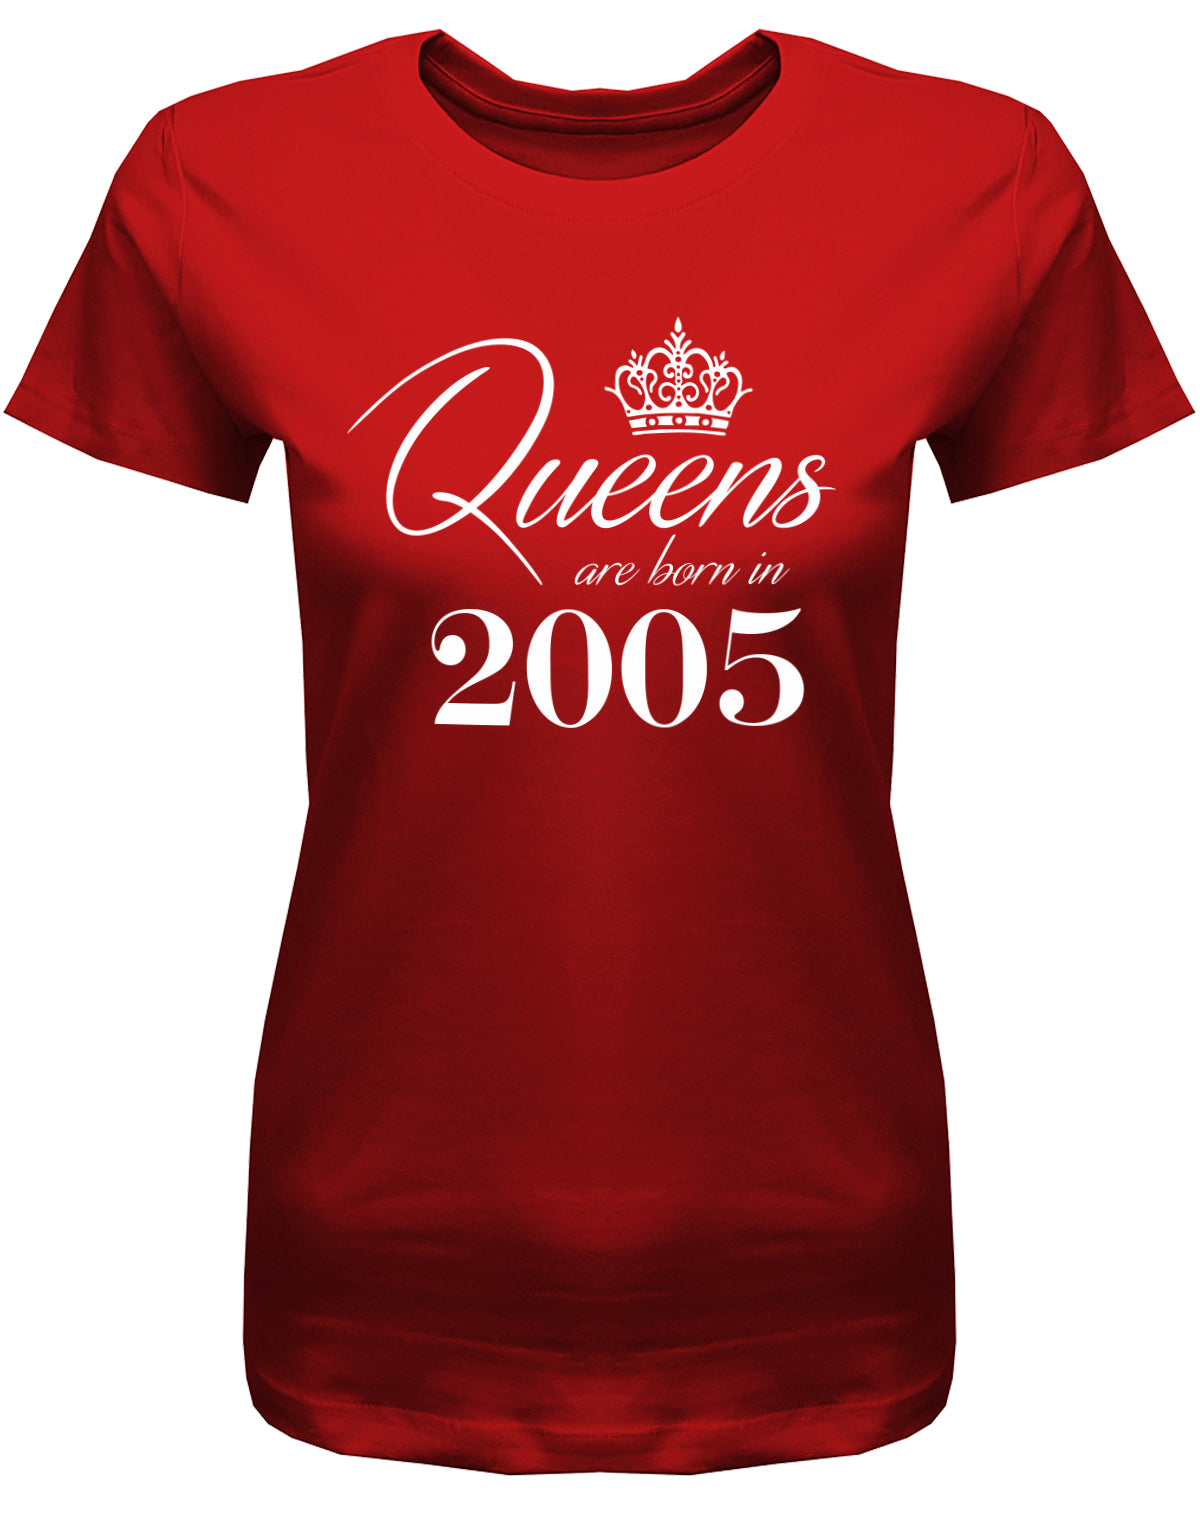 Lustiges T-Shirt zum 18. Geburtstag Mädchen. Bedruckt mit: Queens are born in 2005 - Königin wurden 2005 geboren. Das T Shirt 18 Geburtstag Mädchen Lustig ist ein tolles Geschenk für alle 18 Jährigen. Man wird nur einmal 18 Jahre. Geschenk zum 18 geburtstag Frau ✓ 2005 geburtstag Frau ✓ 18 Geburtstag tshirt ✓ shirt geburtstag 18 Rot